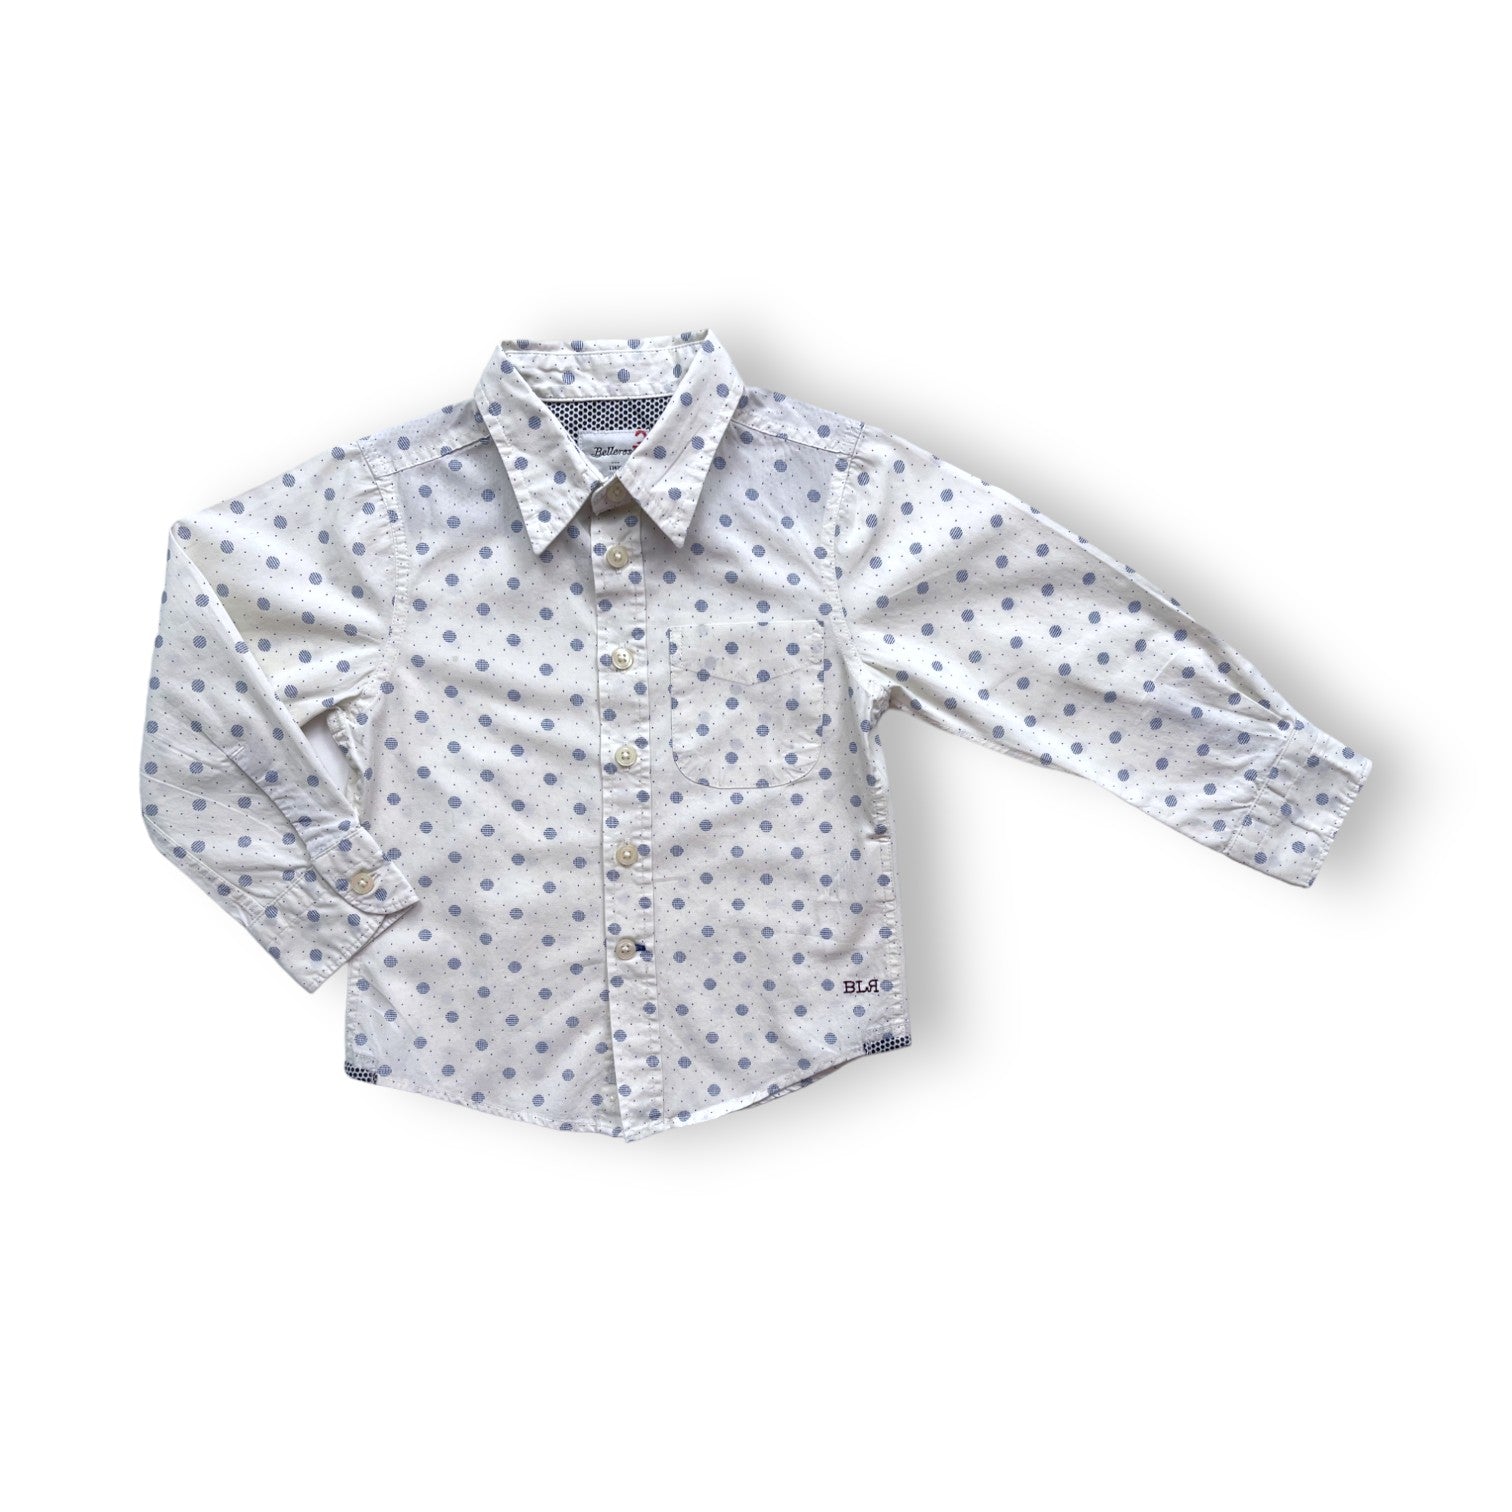 BELLEROSE - Chemise blanche à motifs bleus - 2 ans